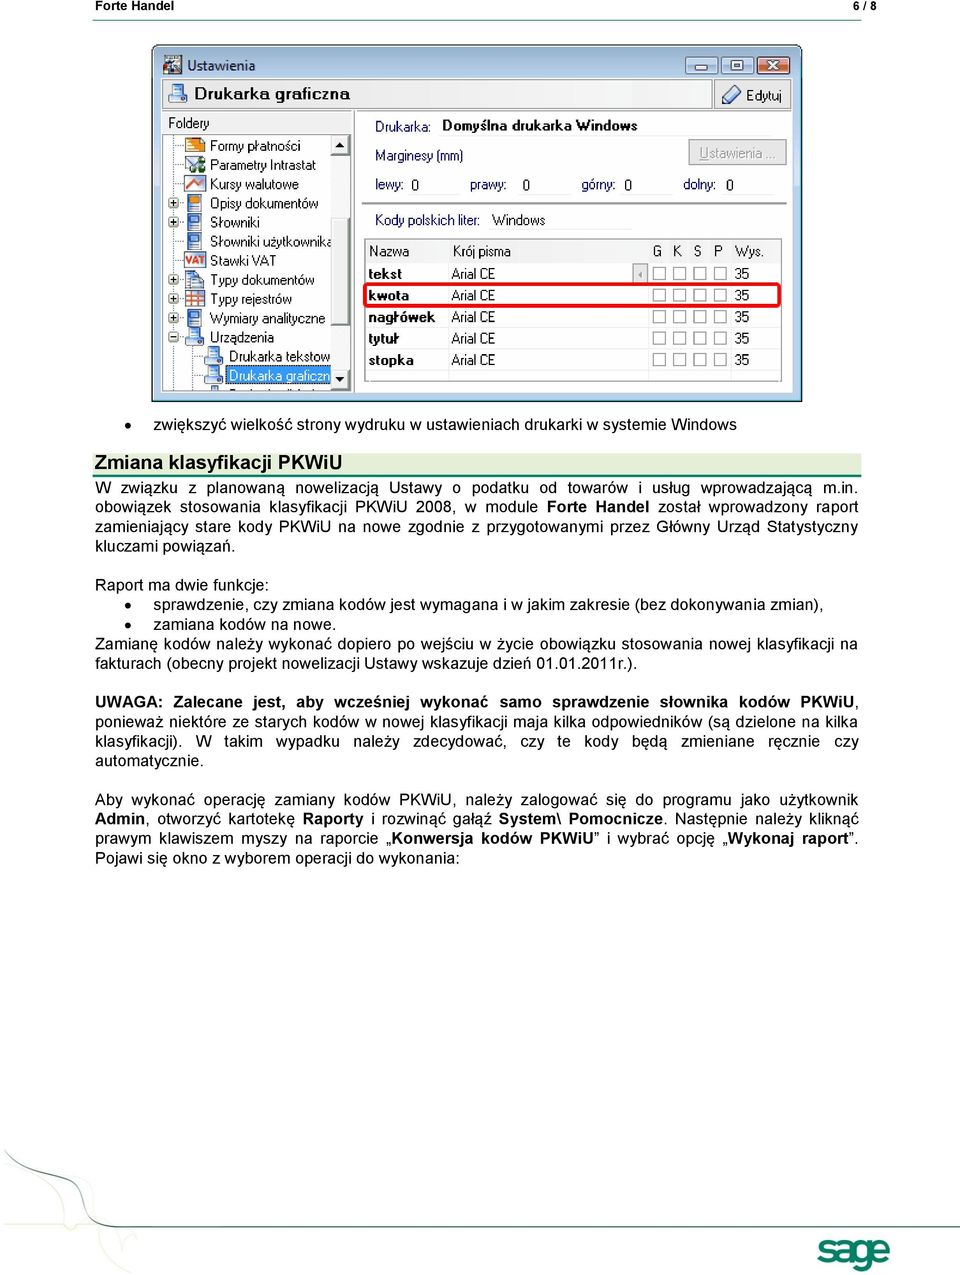 obowiązek stosowania klasyfikacji PKWiU 2008, w module Forte Handel został wprowadzony raport zamieniający stare kody PKWiU na nowe zgodnie z przygotowanymi przez Główny Urząd Statystyczny kluczami